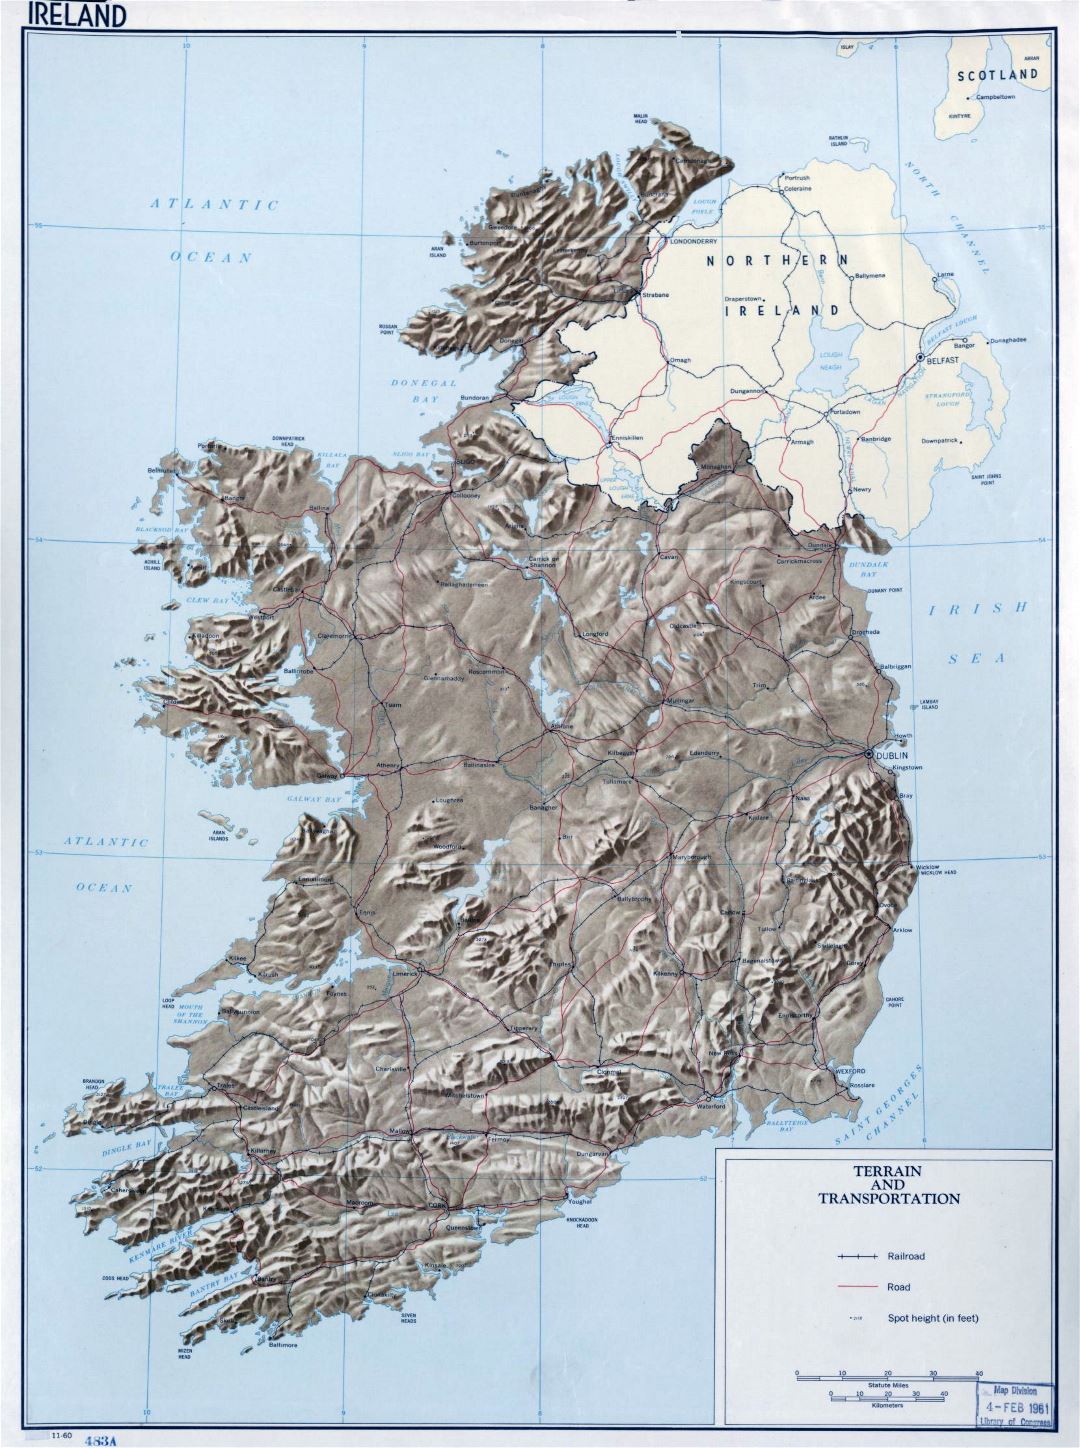 Grande detallada mapa del terreno y transporte de Irlanda - 1960